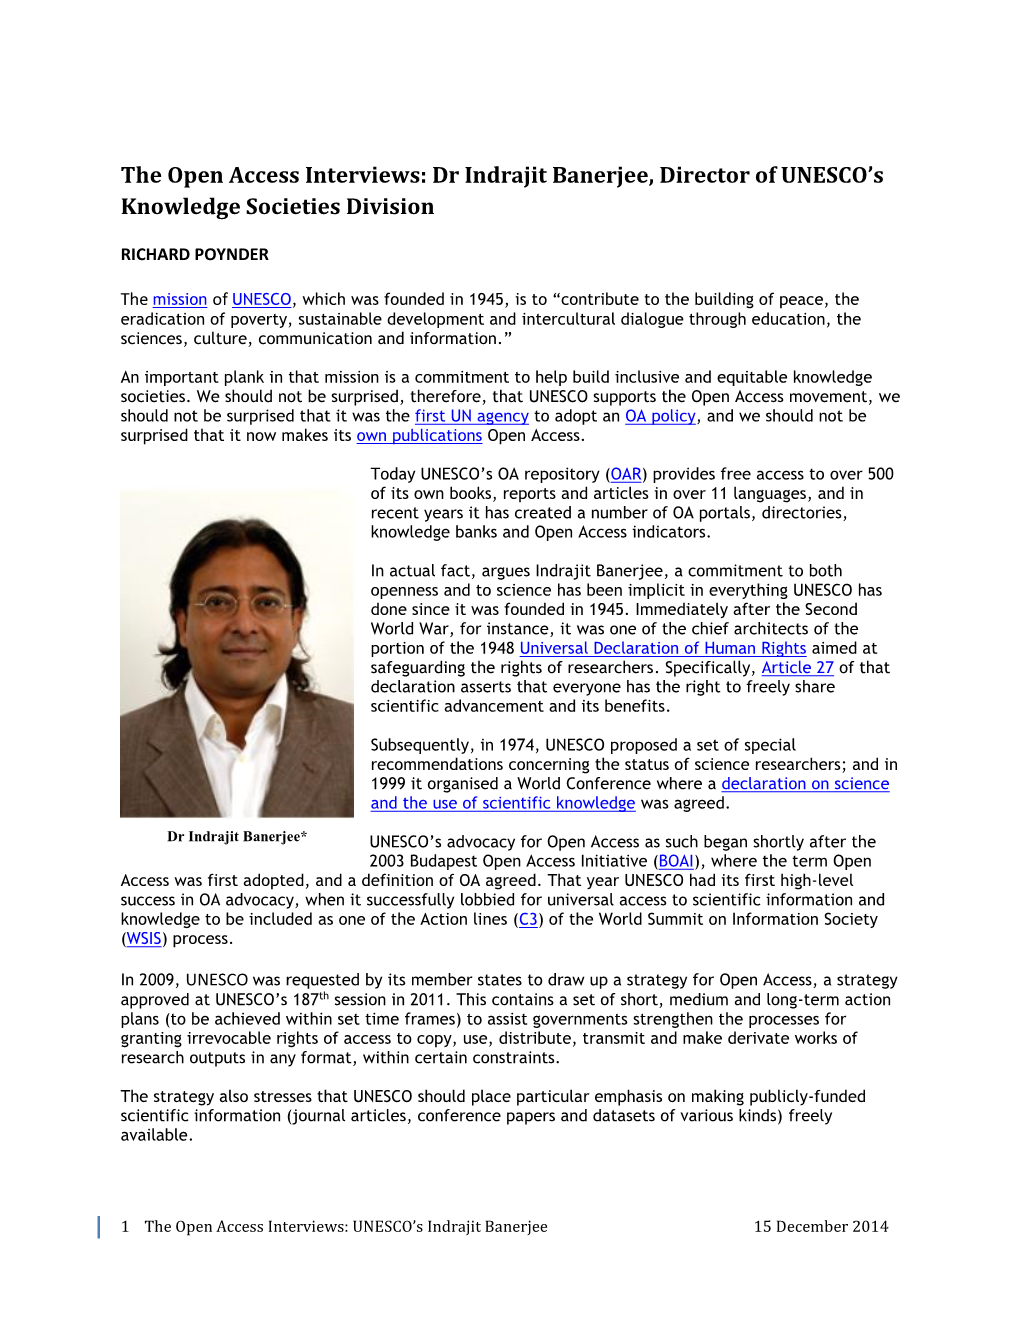 Dr Indrajit Banerjee, Director of UNESCO's Knowledge Societies